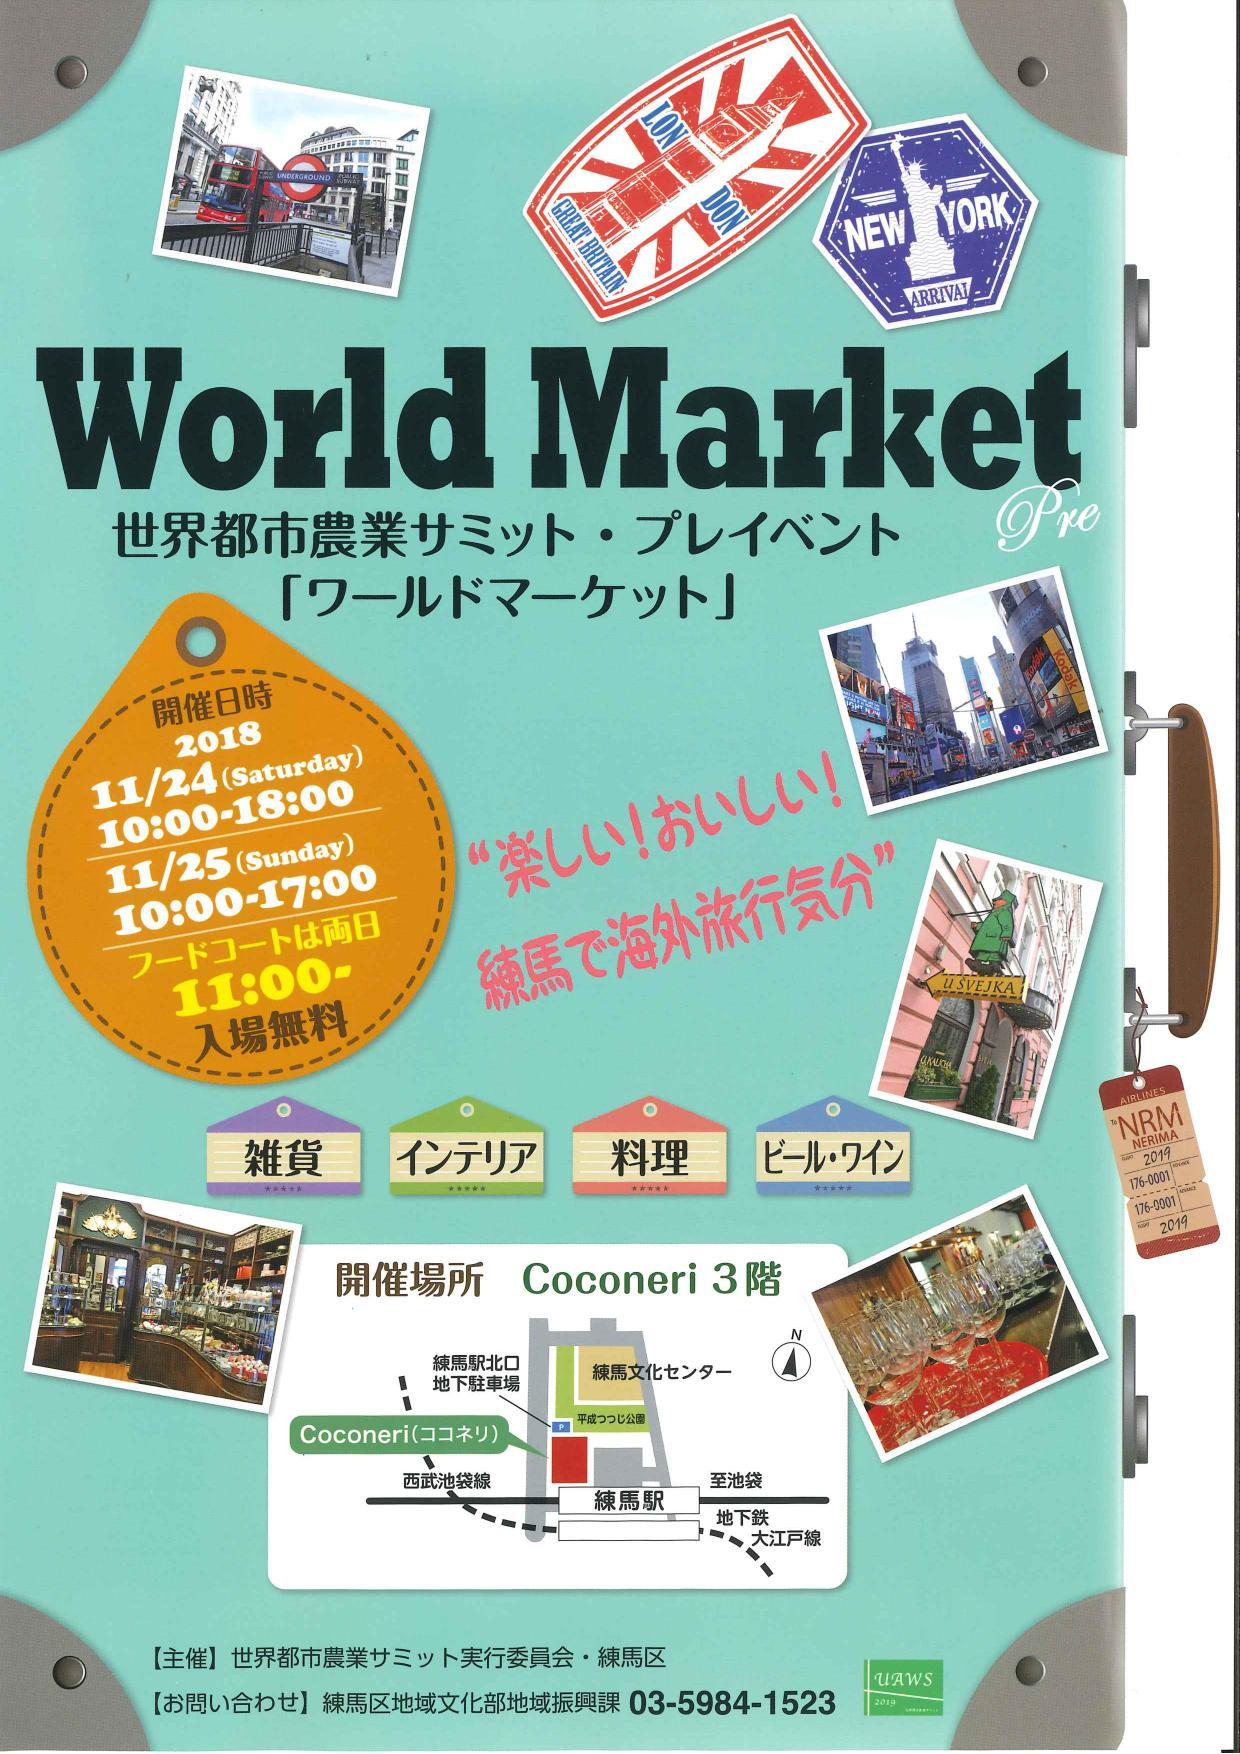 世界都市農業サミット・プレイベント『ワールドマーケット』